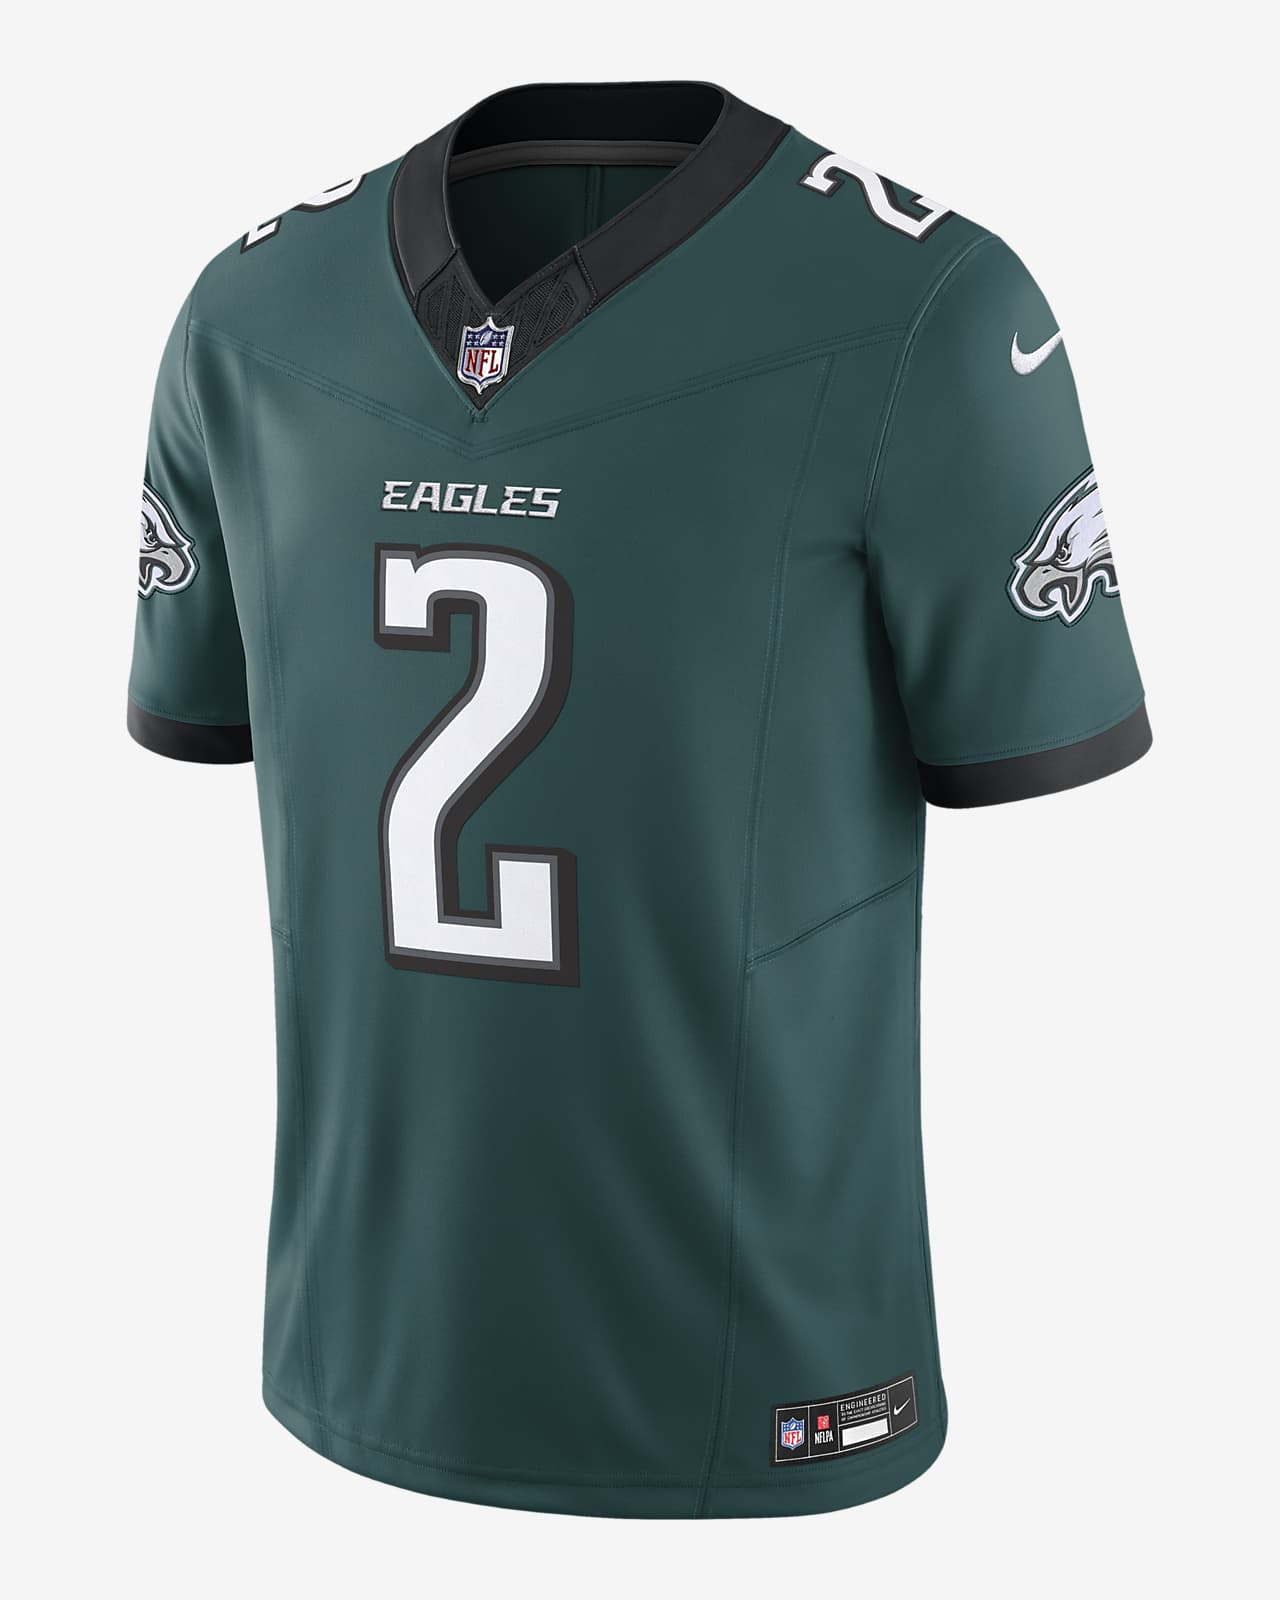 Jersey de fútbol americano Nike Dri-FIT de la NFL Limited para hombre Darius Slay Philadelphia Eagles